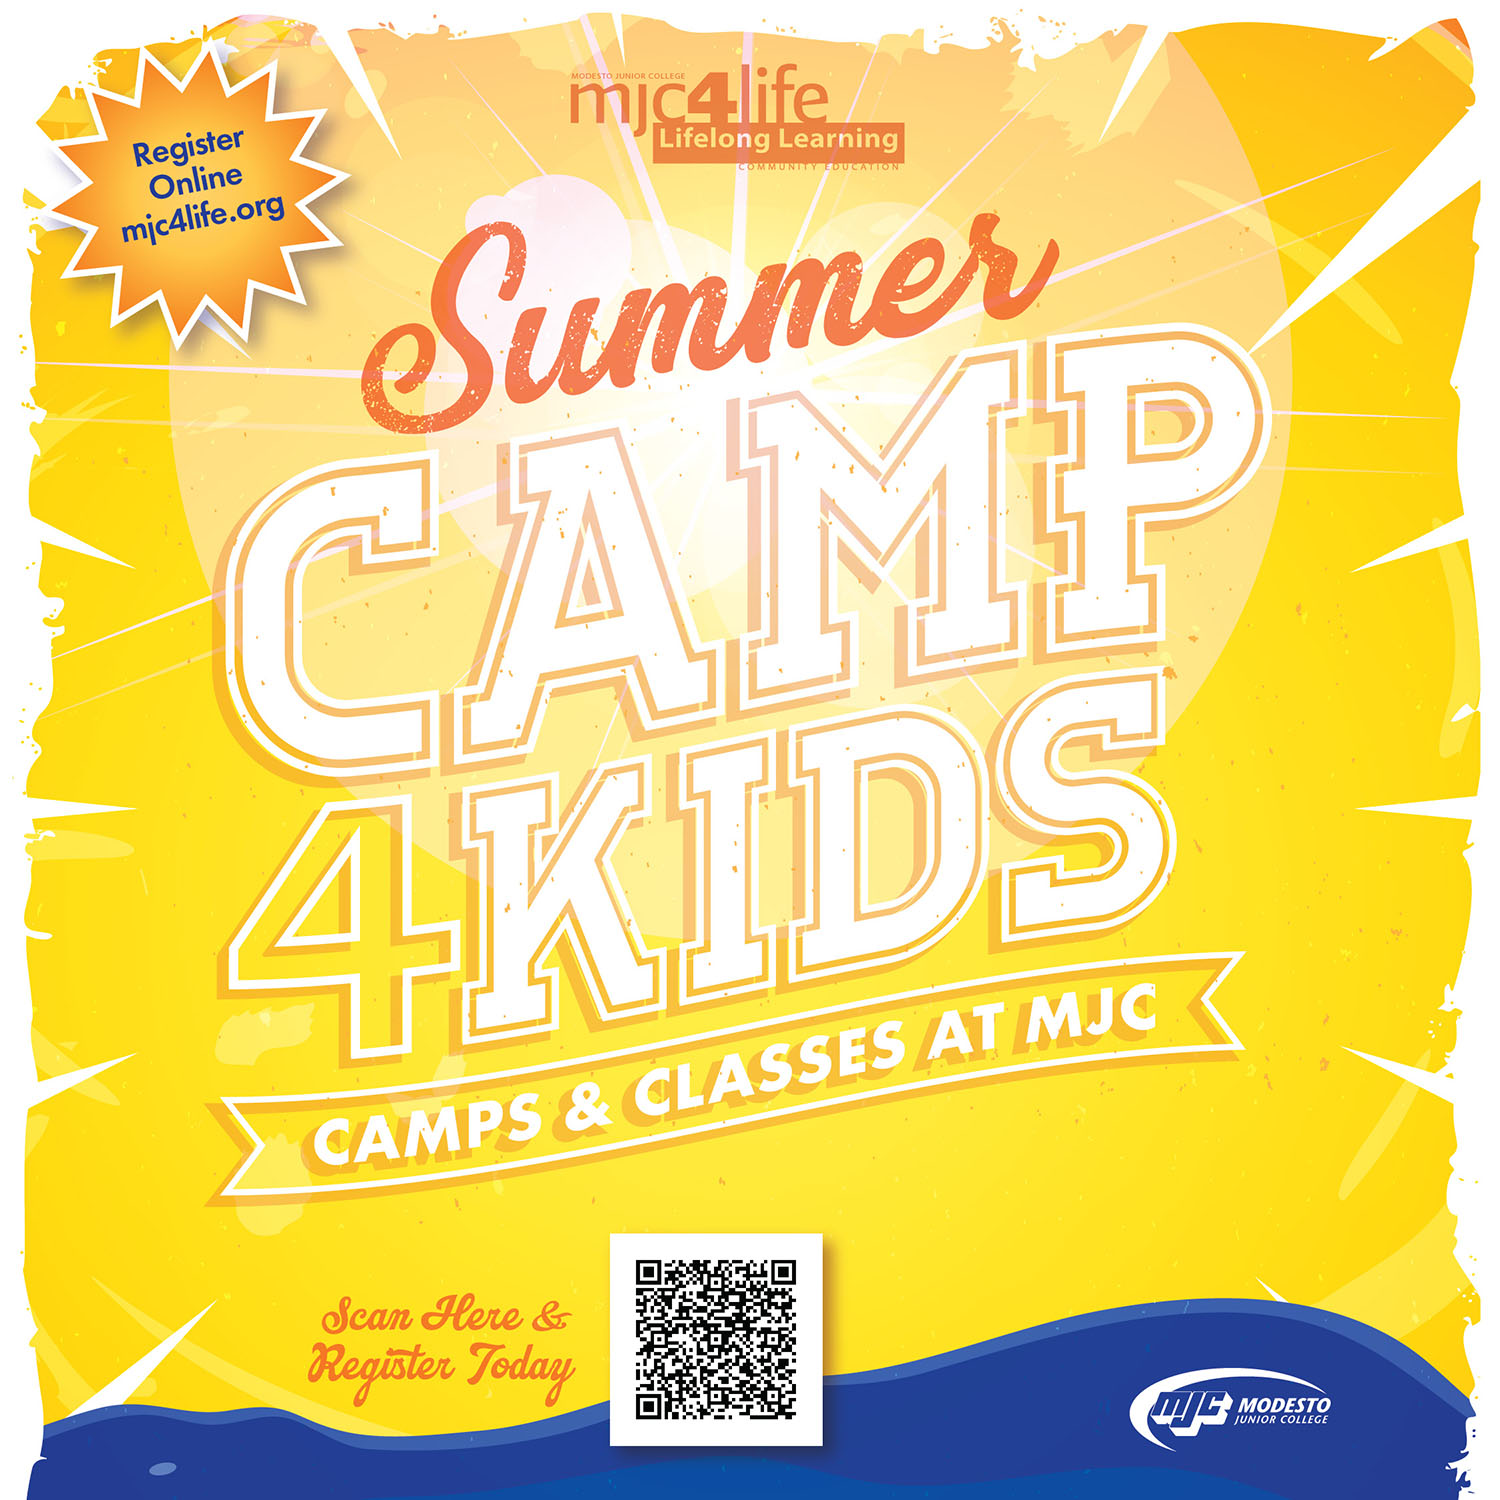 MJC Summer Camp4Kids